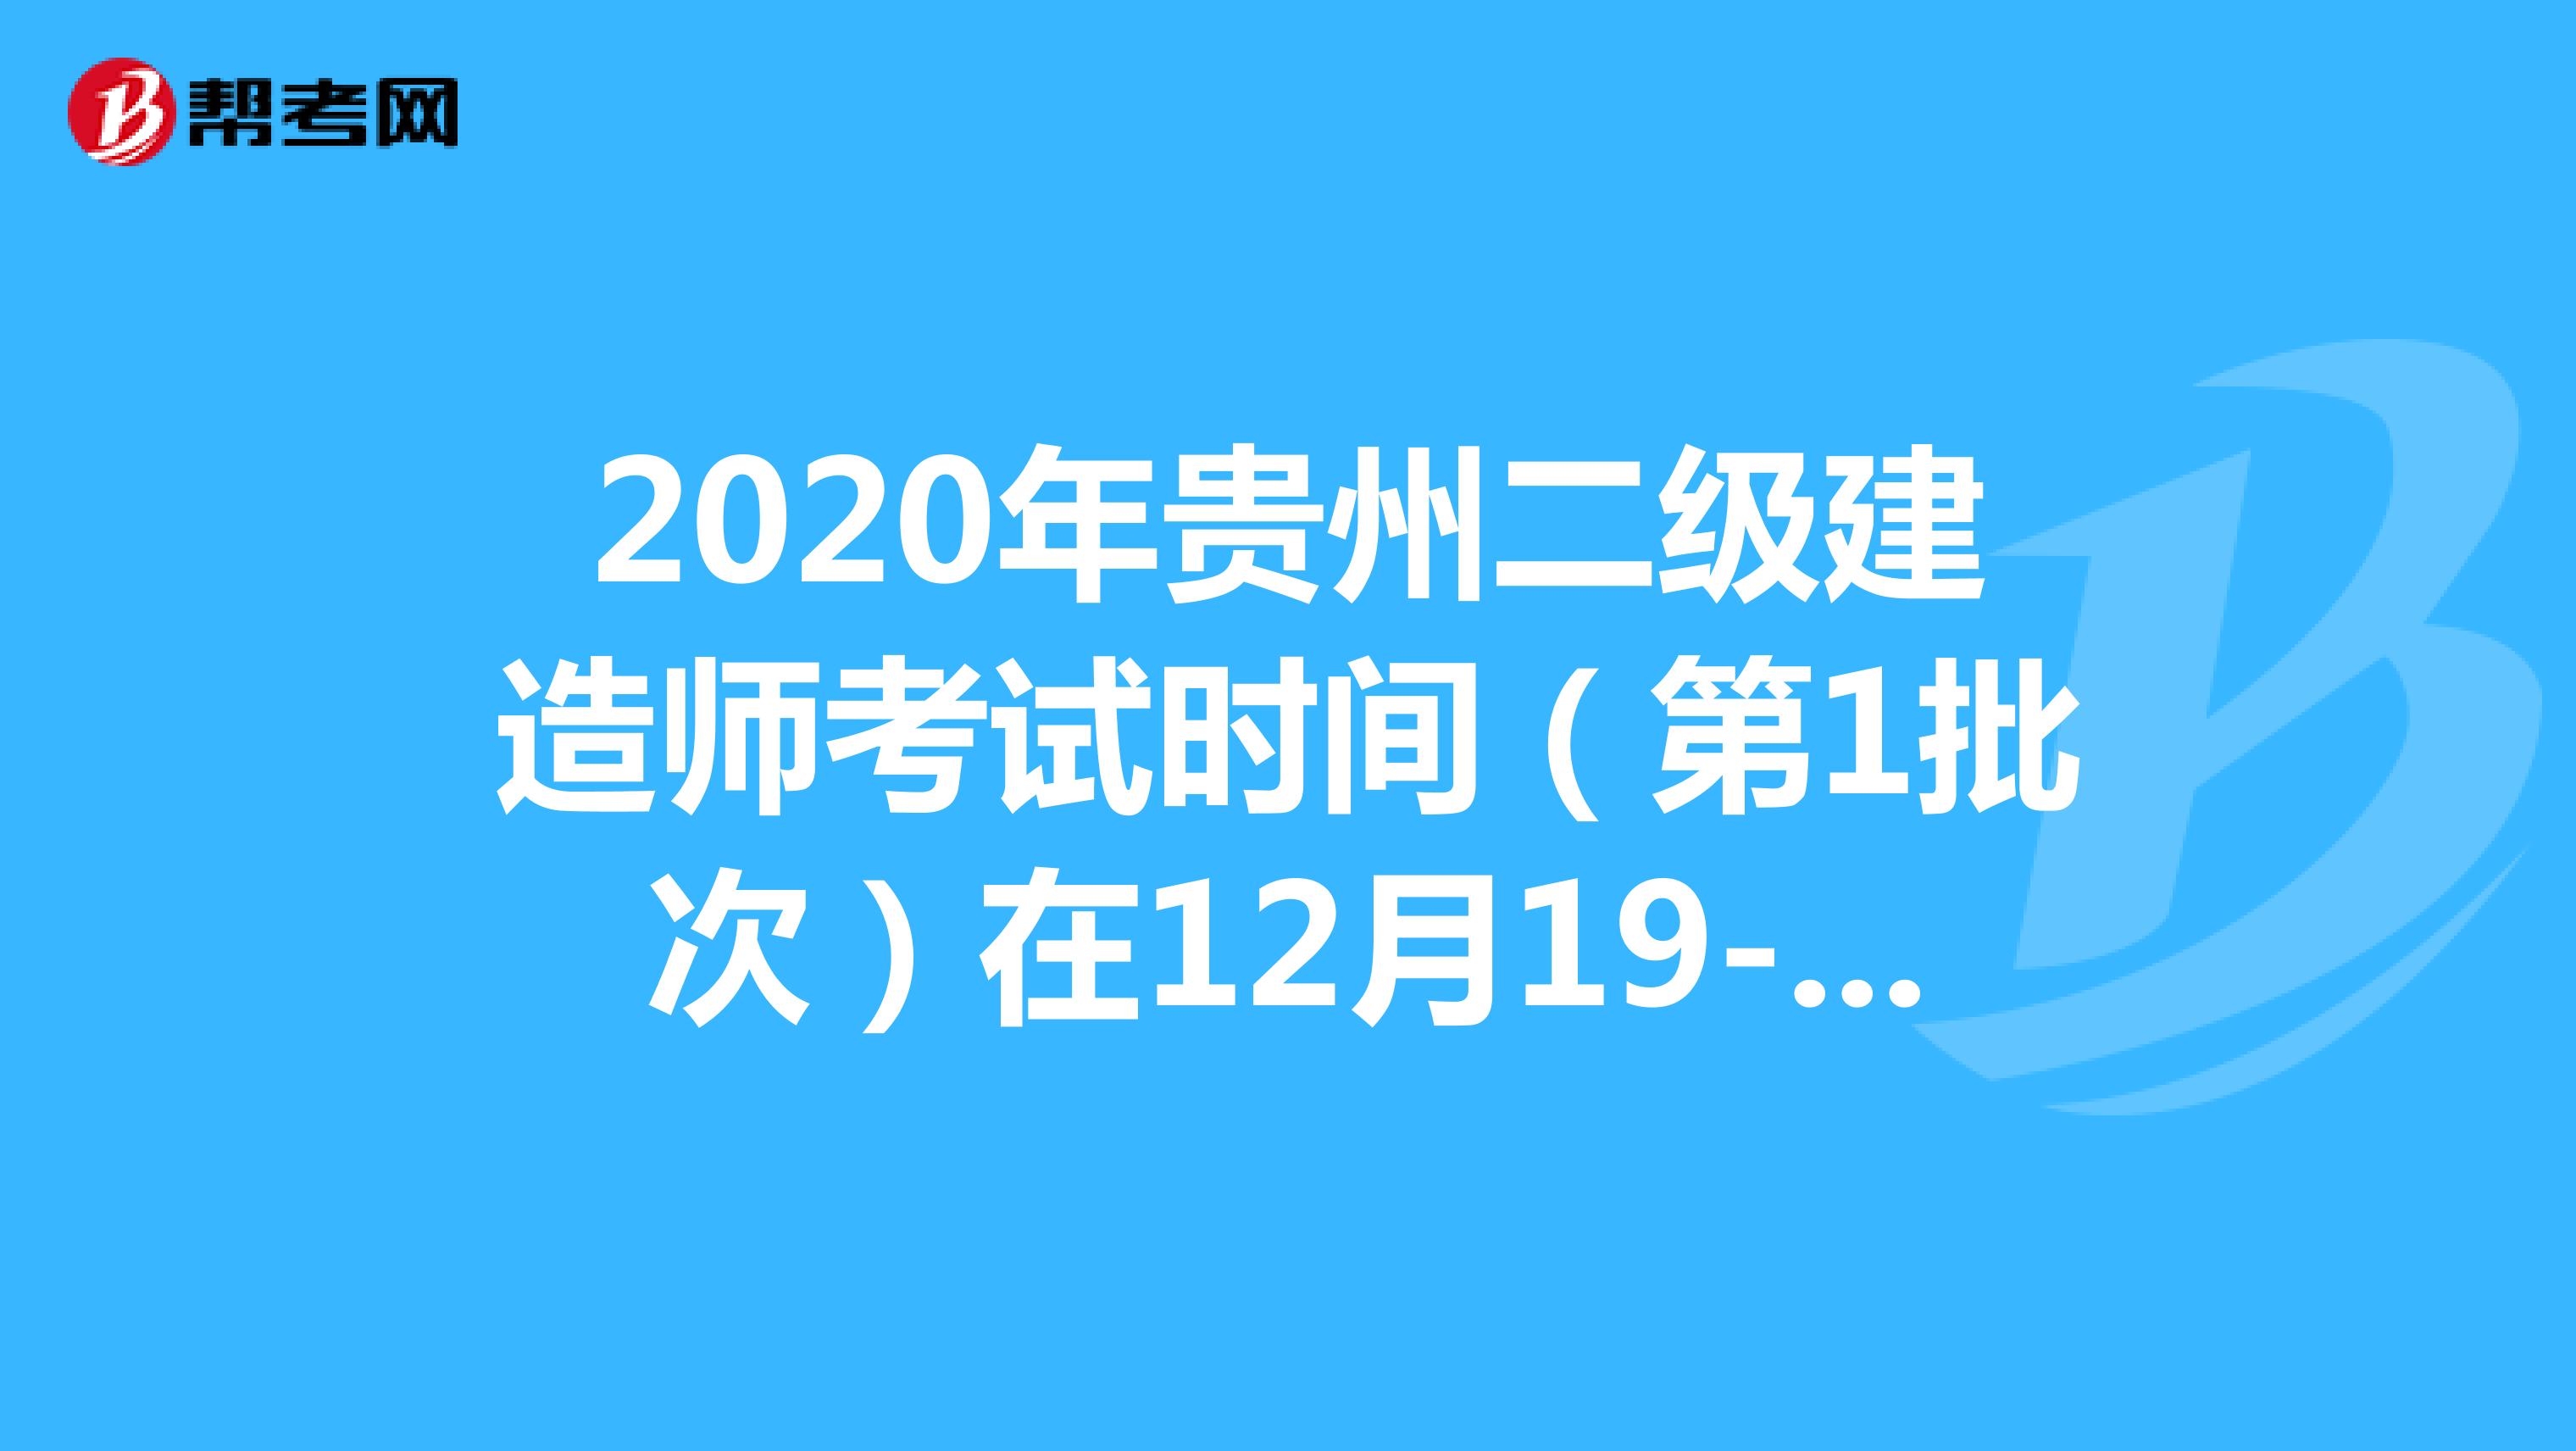 2020年贵州二级建造师考试时间（第1批次）在12月19-20日举行